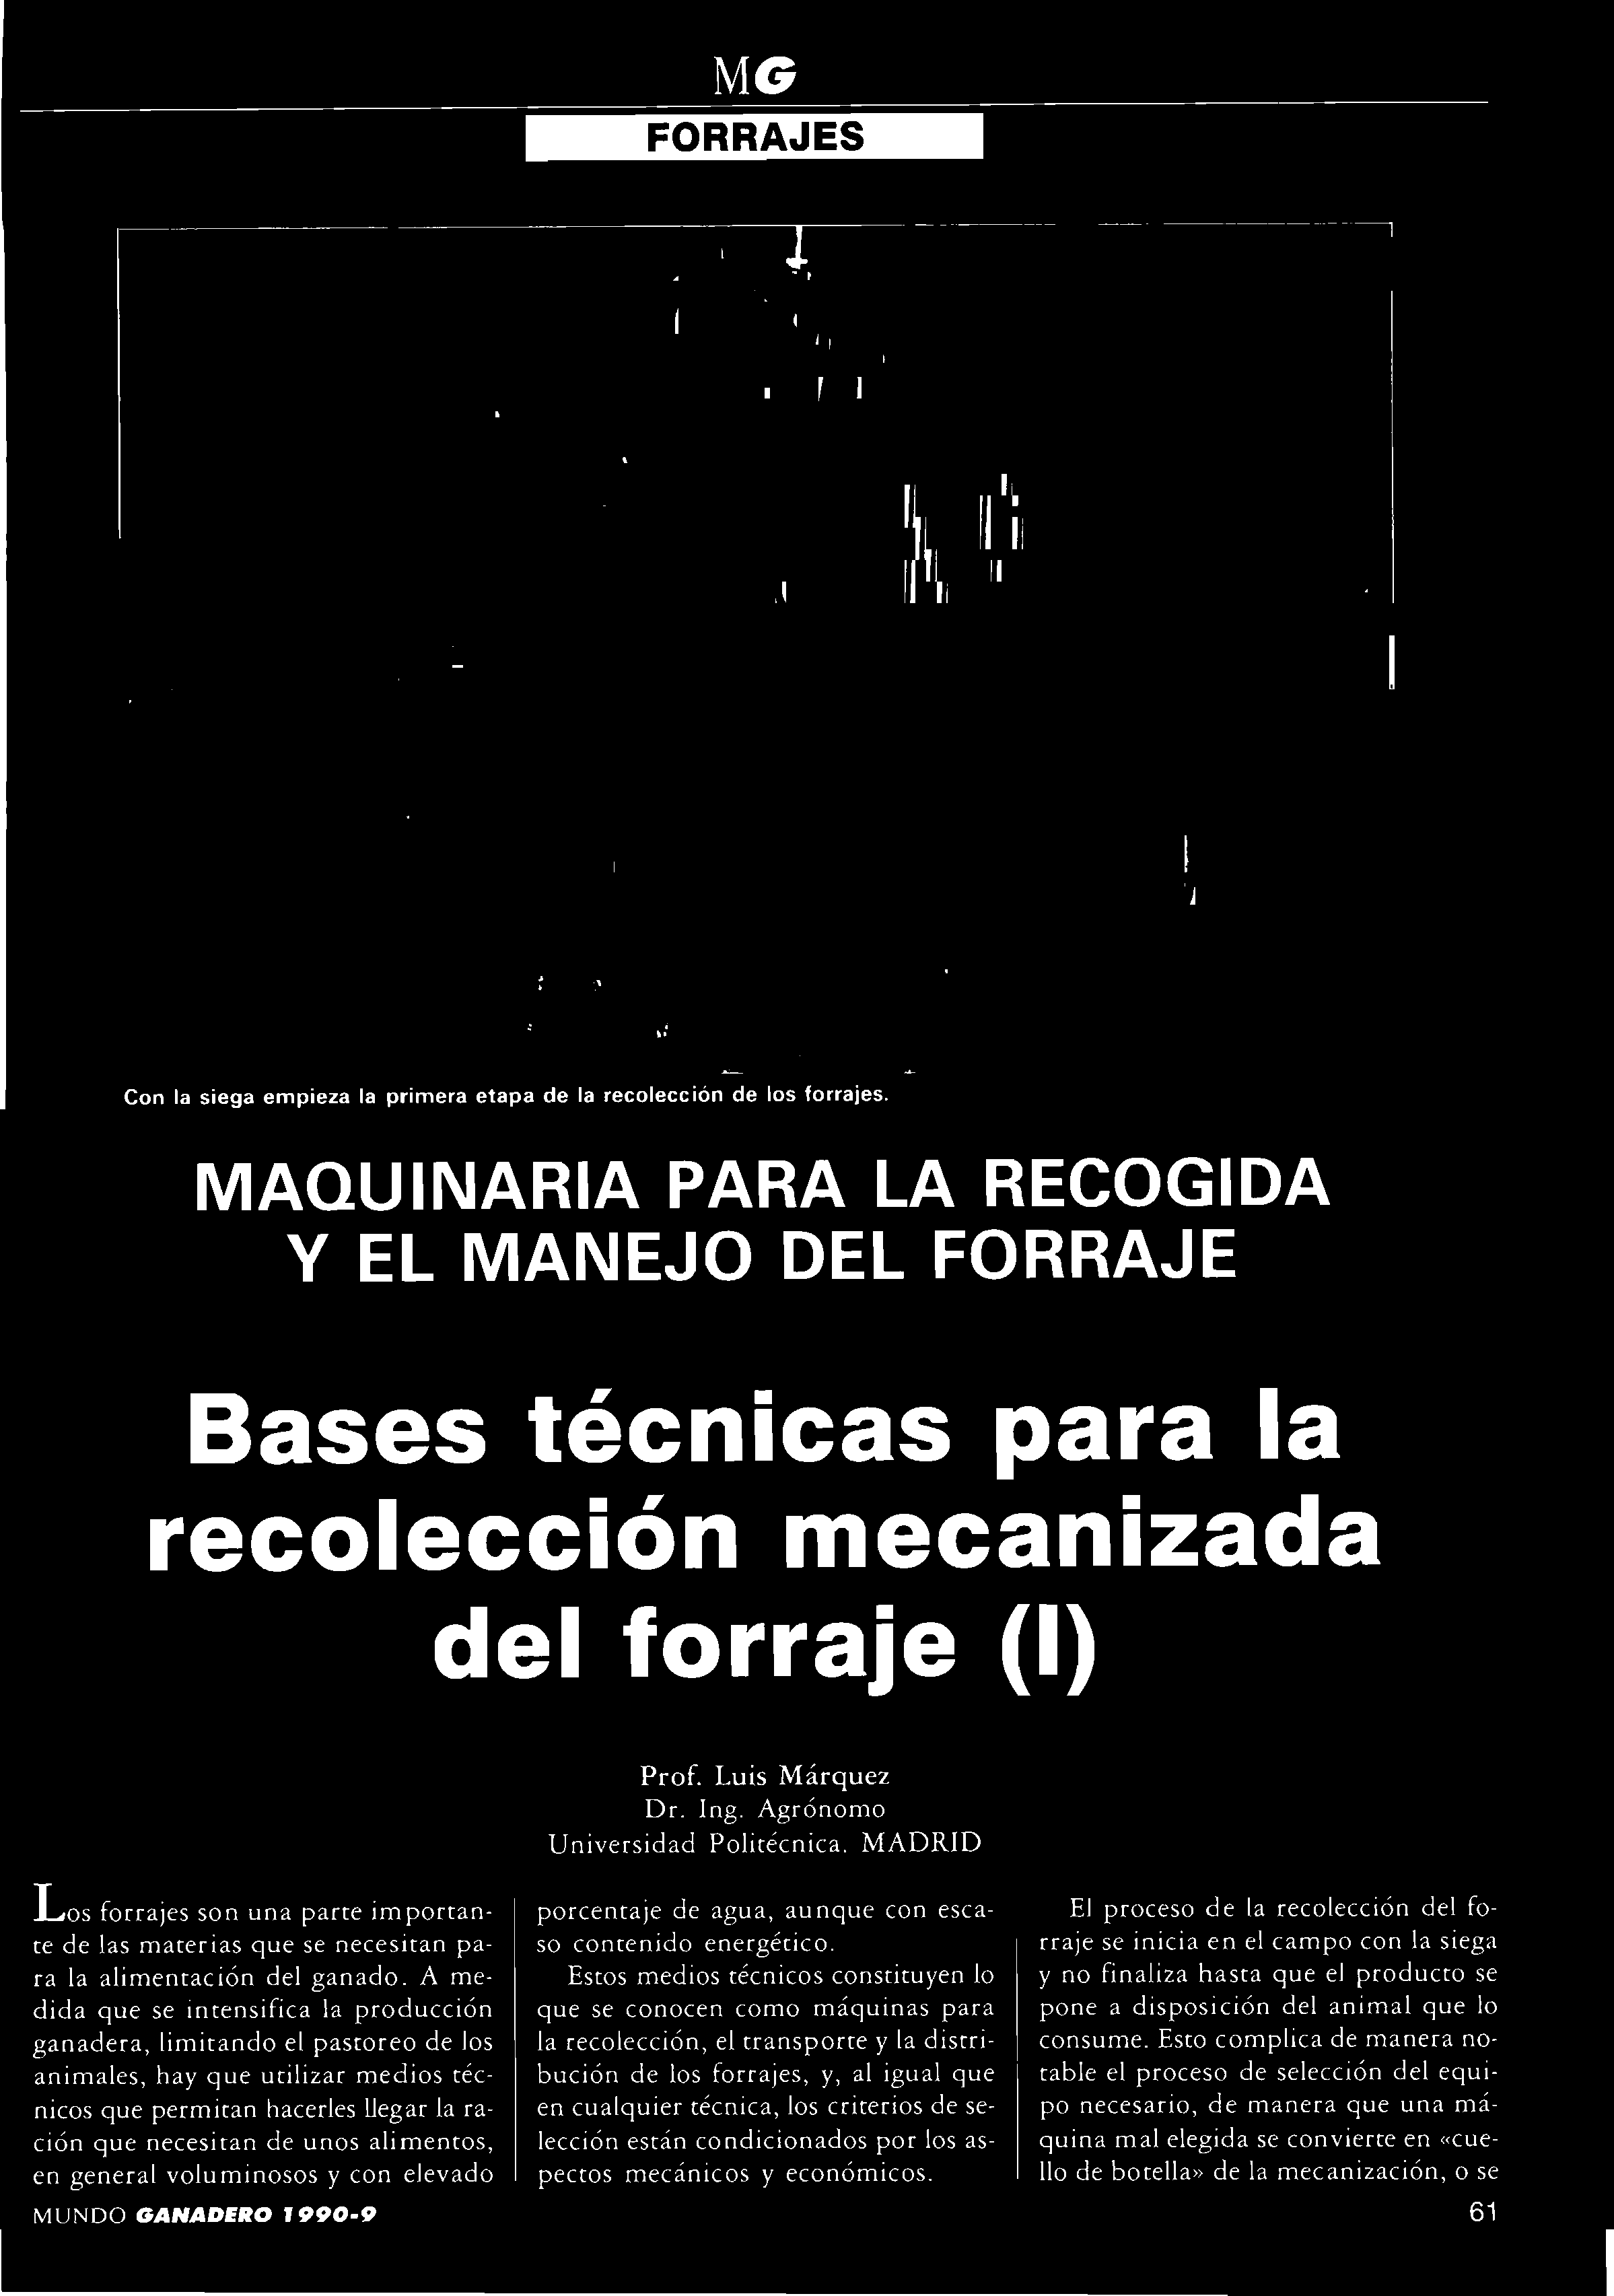 MAQUINARIA PARA LA RECOGIDA Y EL MANEJO DEL FORRAJE Bases técnicas para la recolección mecanizada del forraje (I) Prof. Luis Márquez Dr. In^,. Agrónomo Univcrsida^l Pulitécnica.